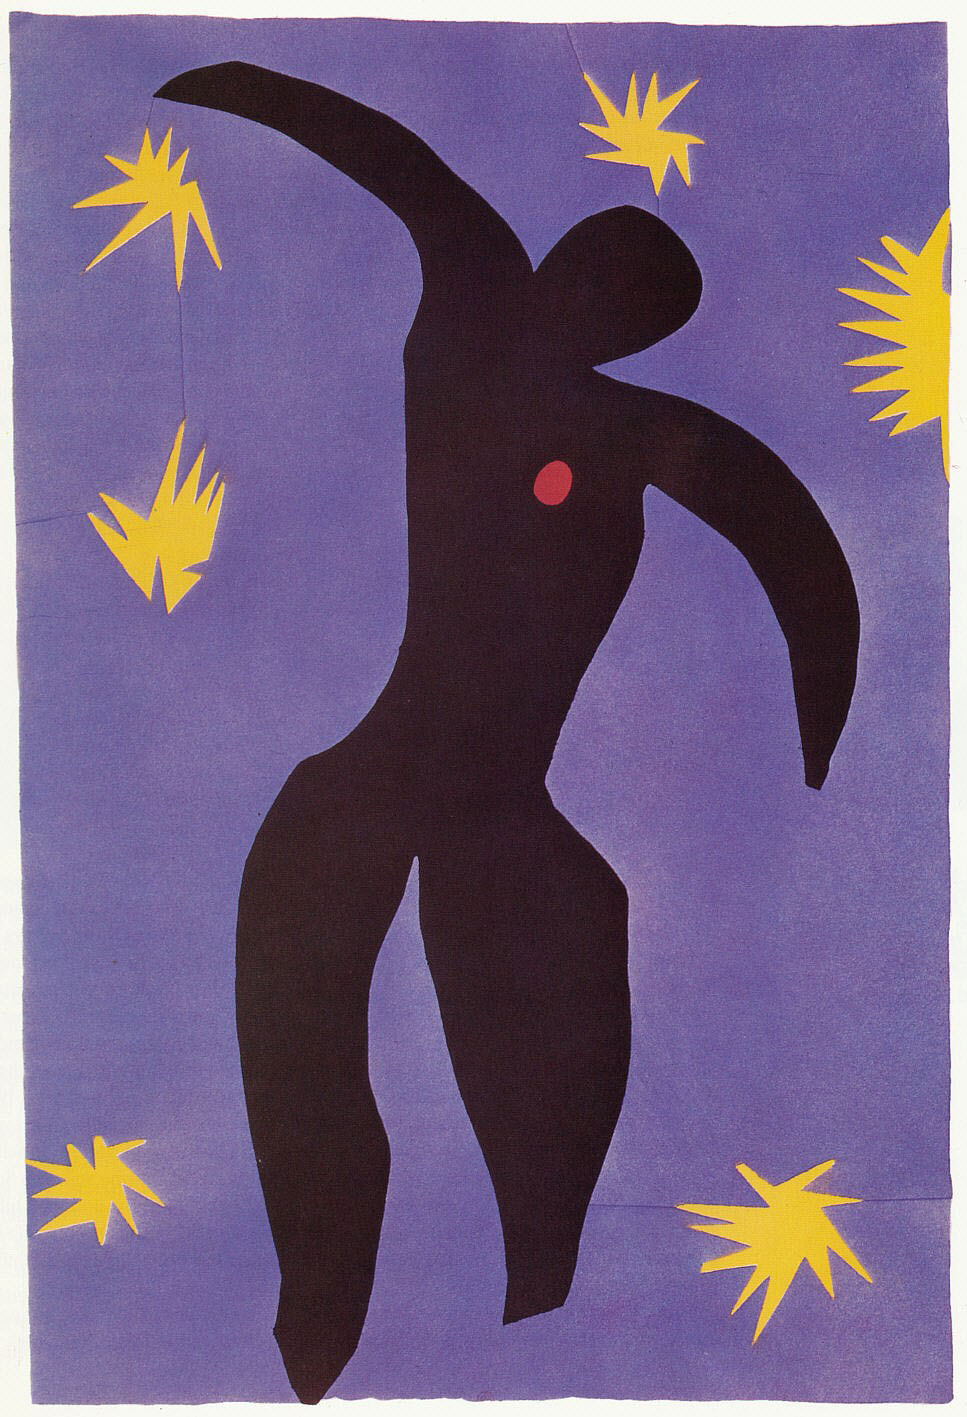 Matisse, Henri, Collage und Objektkunst von Kubismus bis heute, von Diane Waldman, 1993, S. 195, Abb. 264